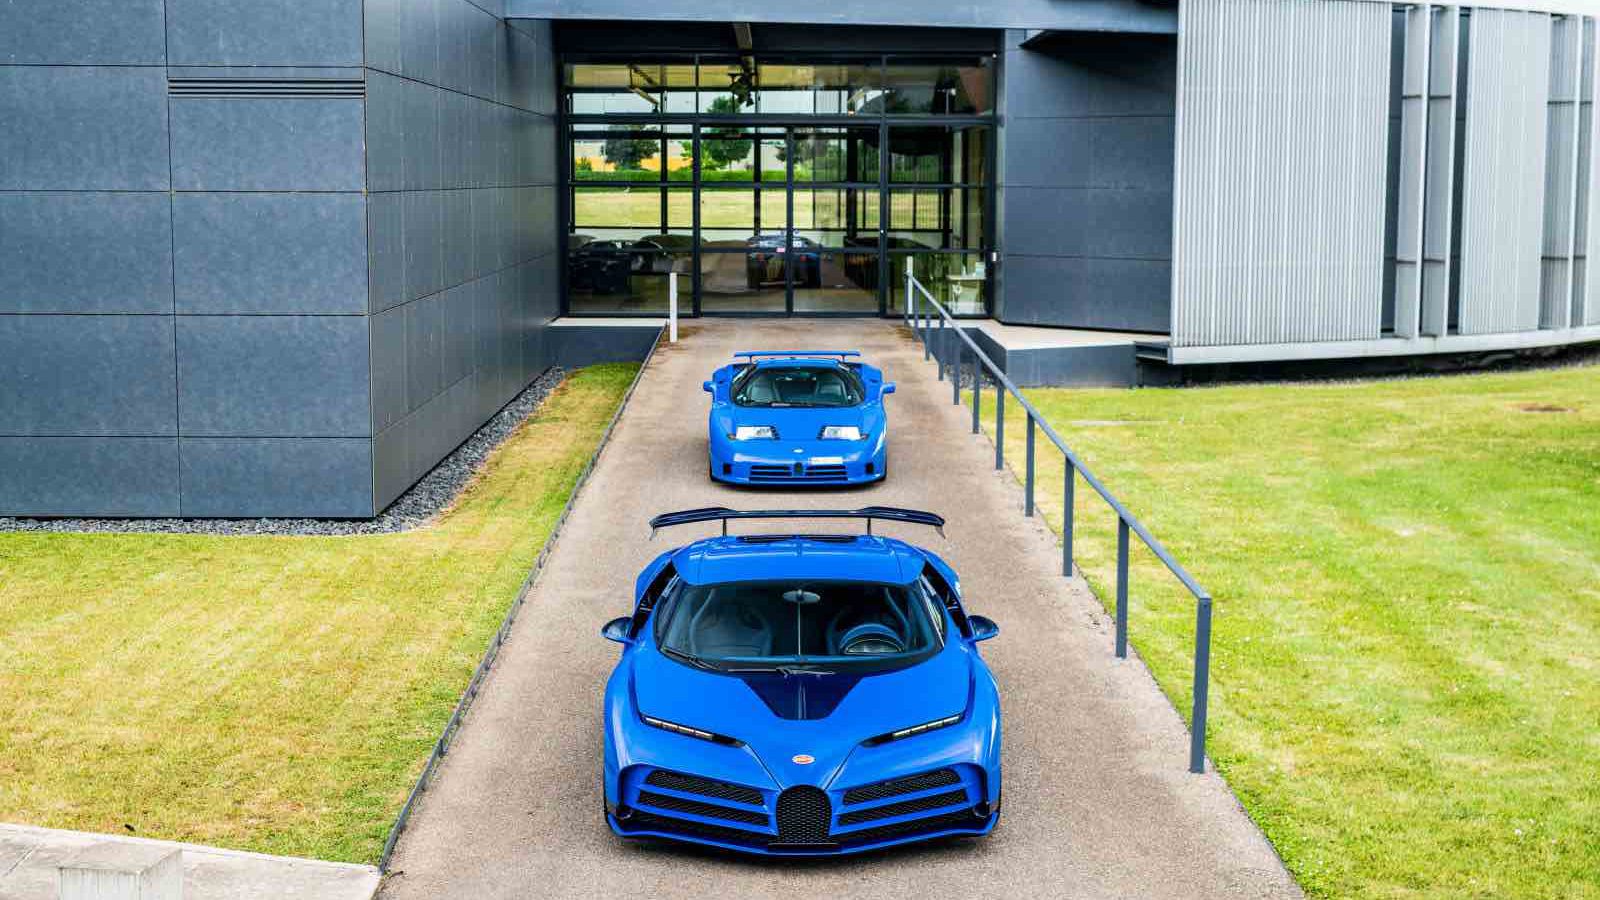 Twee blauwe sportwagens staan geparkeerd voor een modern gebouw met grote ramen en grijze buitenmuren. Zien: dit is de eerste klantgeleverde Bugatti Centodieci, die een vleugje exclusiviteit aan de scène toevoegt.